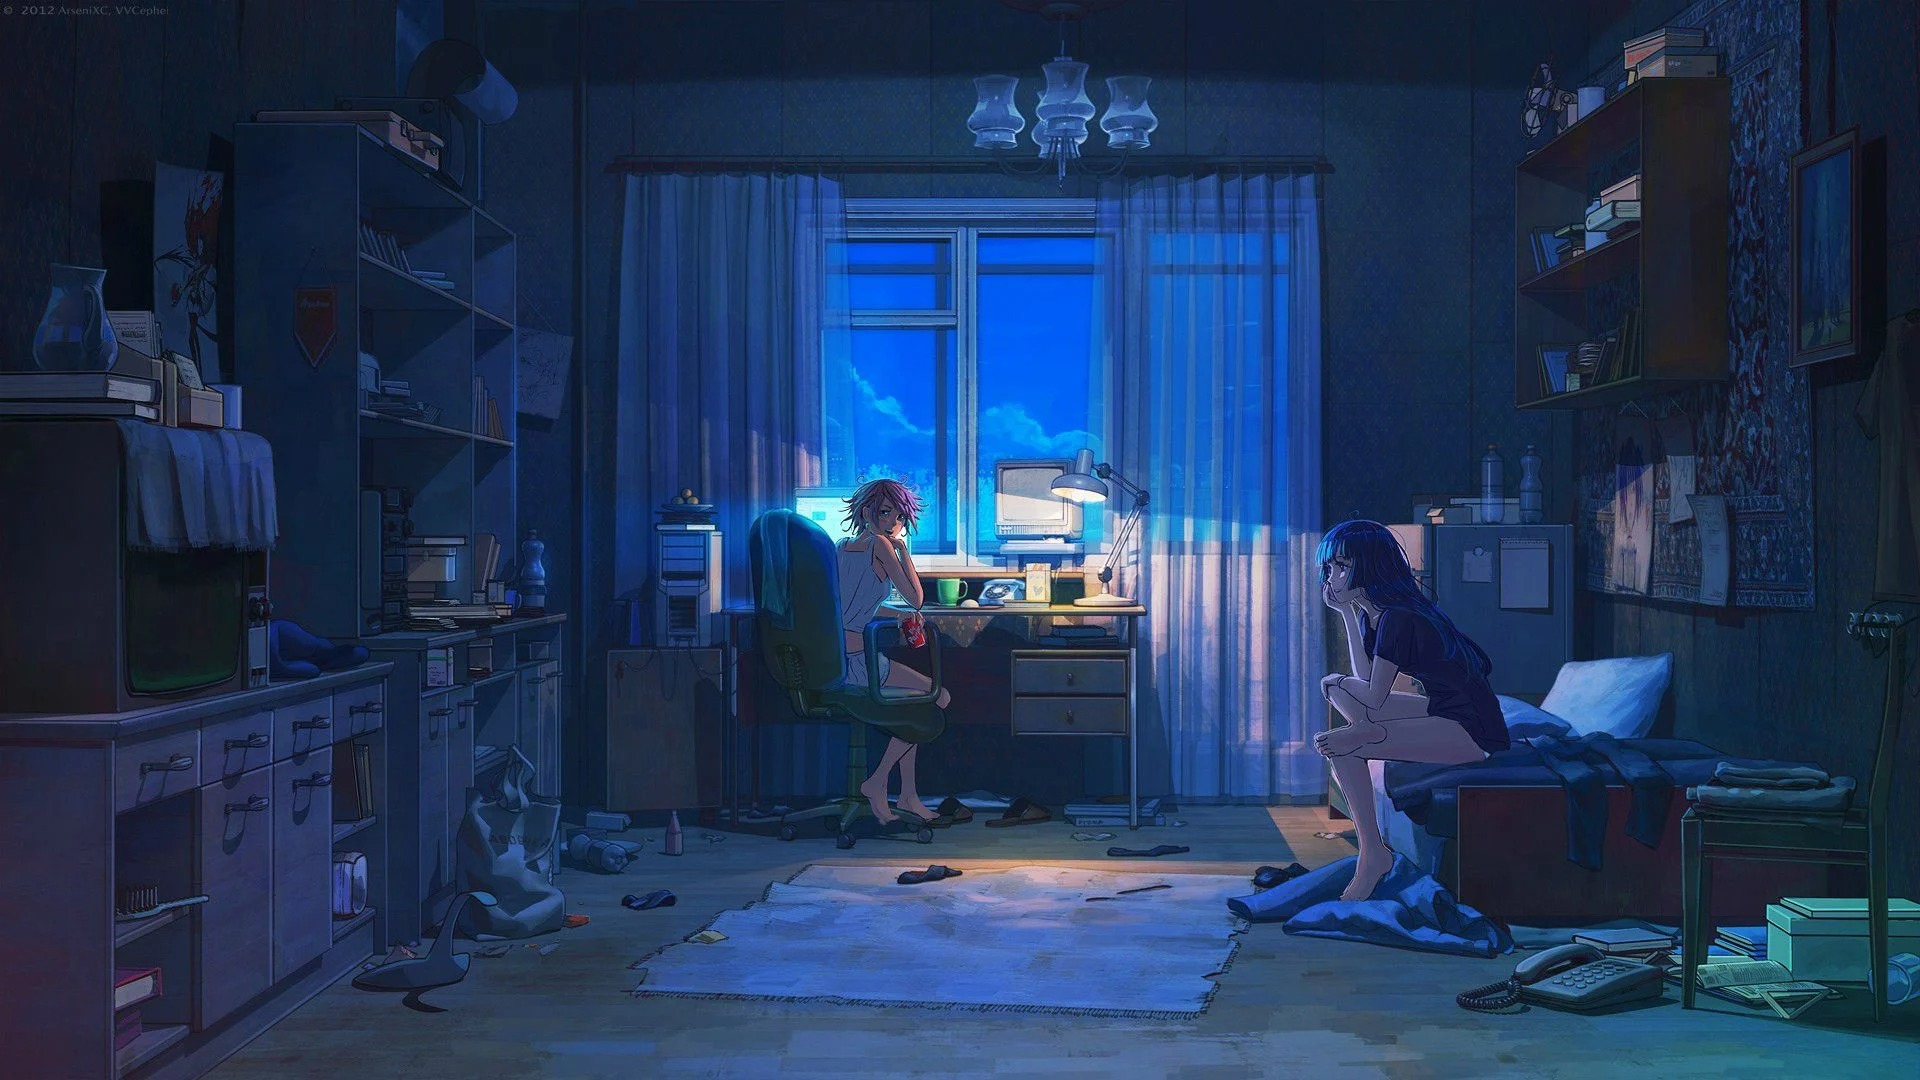 Kết quả hình ảnh cho ảnh bìa facebook phong cảnh anime | Anime scenery,  Scenery wallpaper, Anime scenery wallpaper